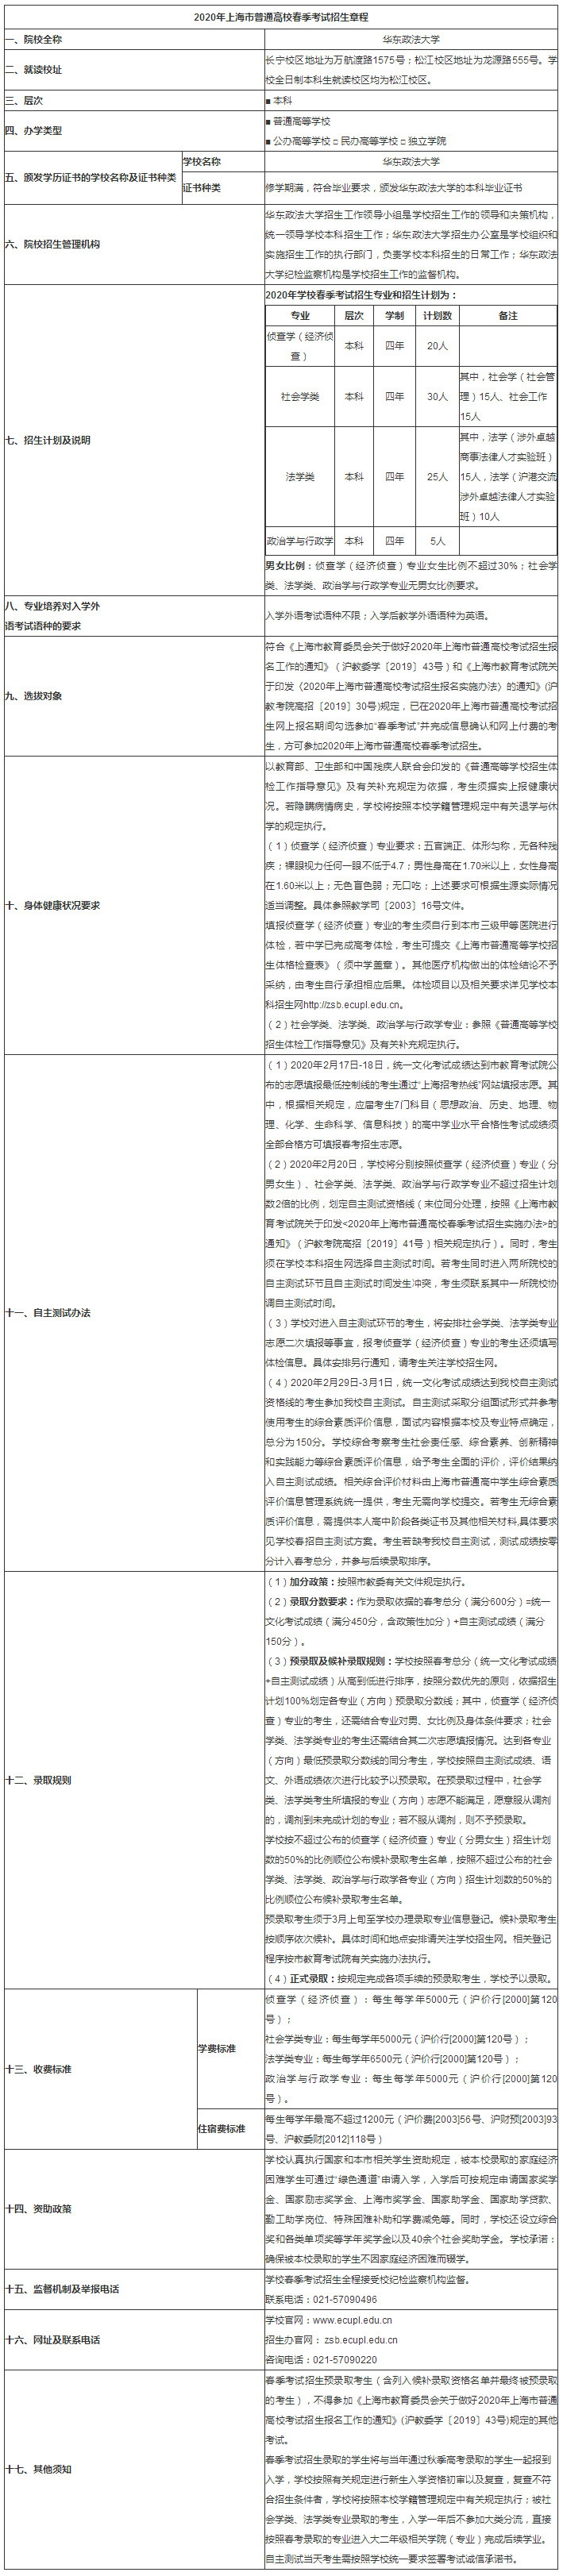 华东政法大学2020年春季高考招生章程.jpg